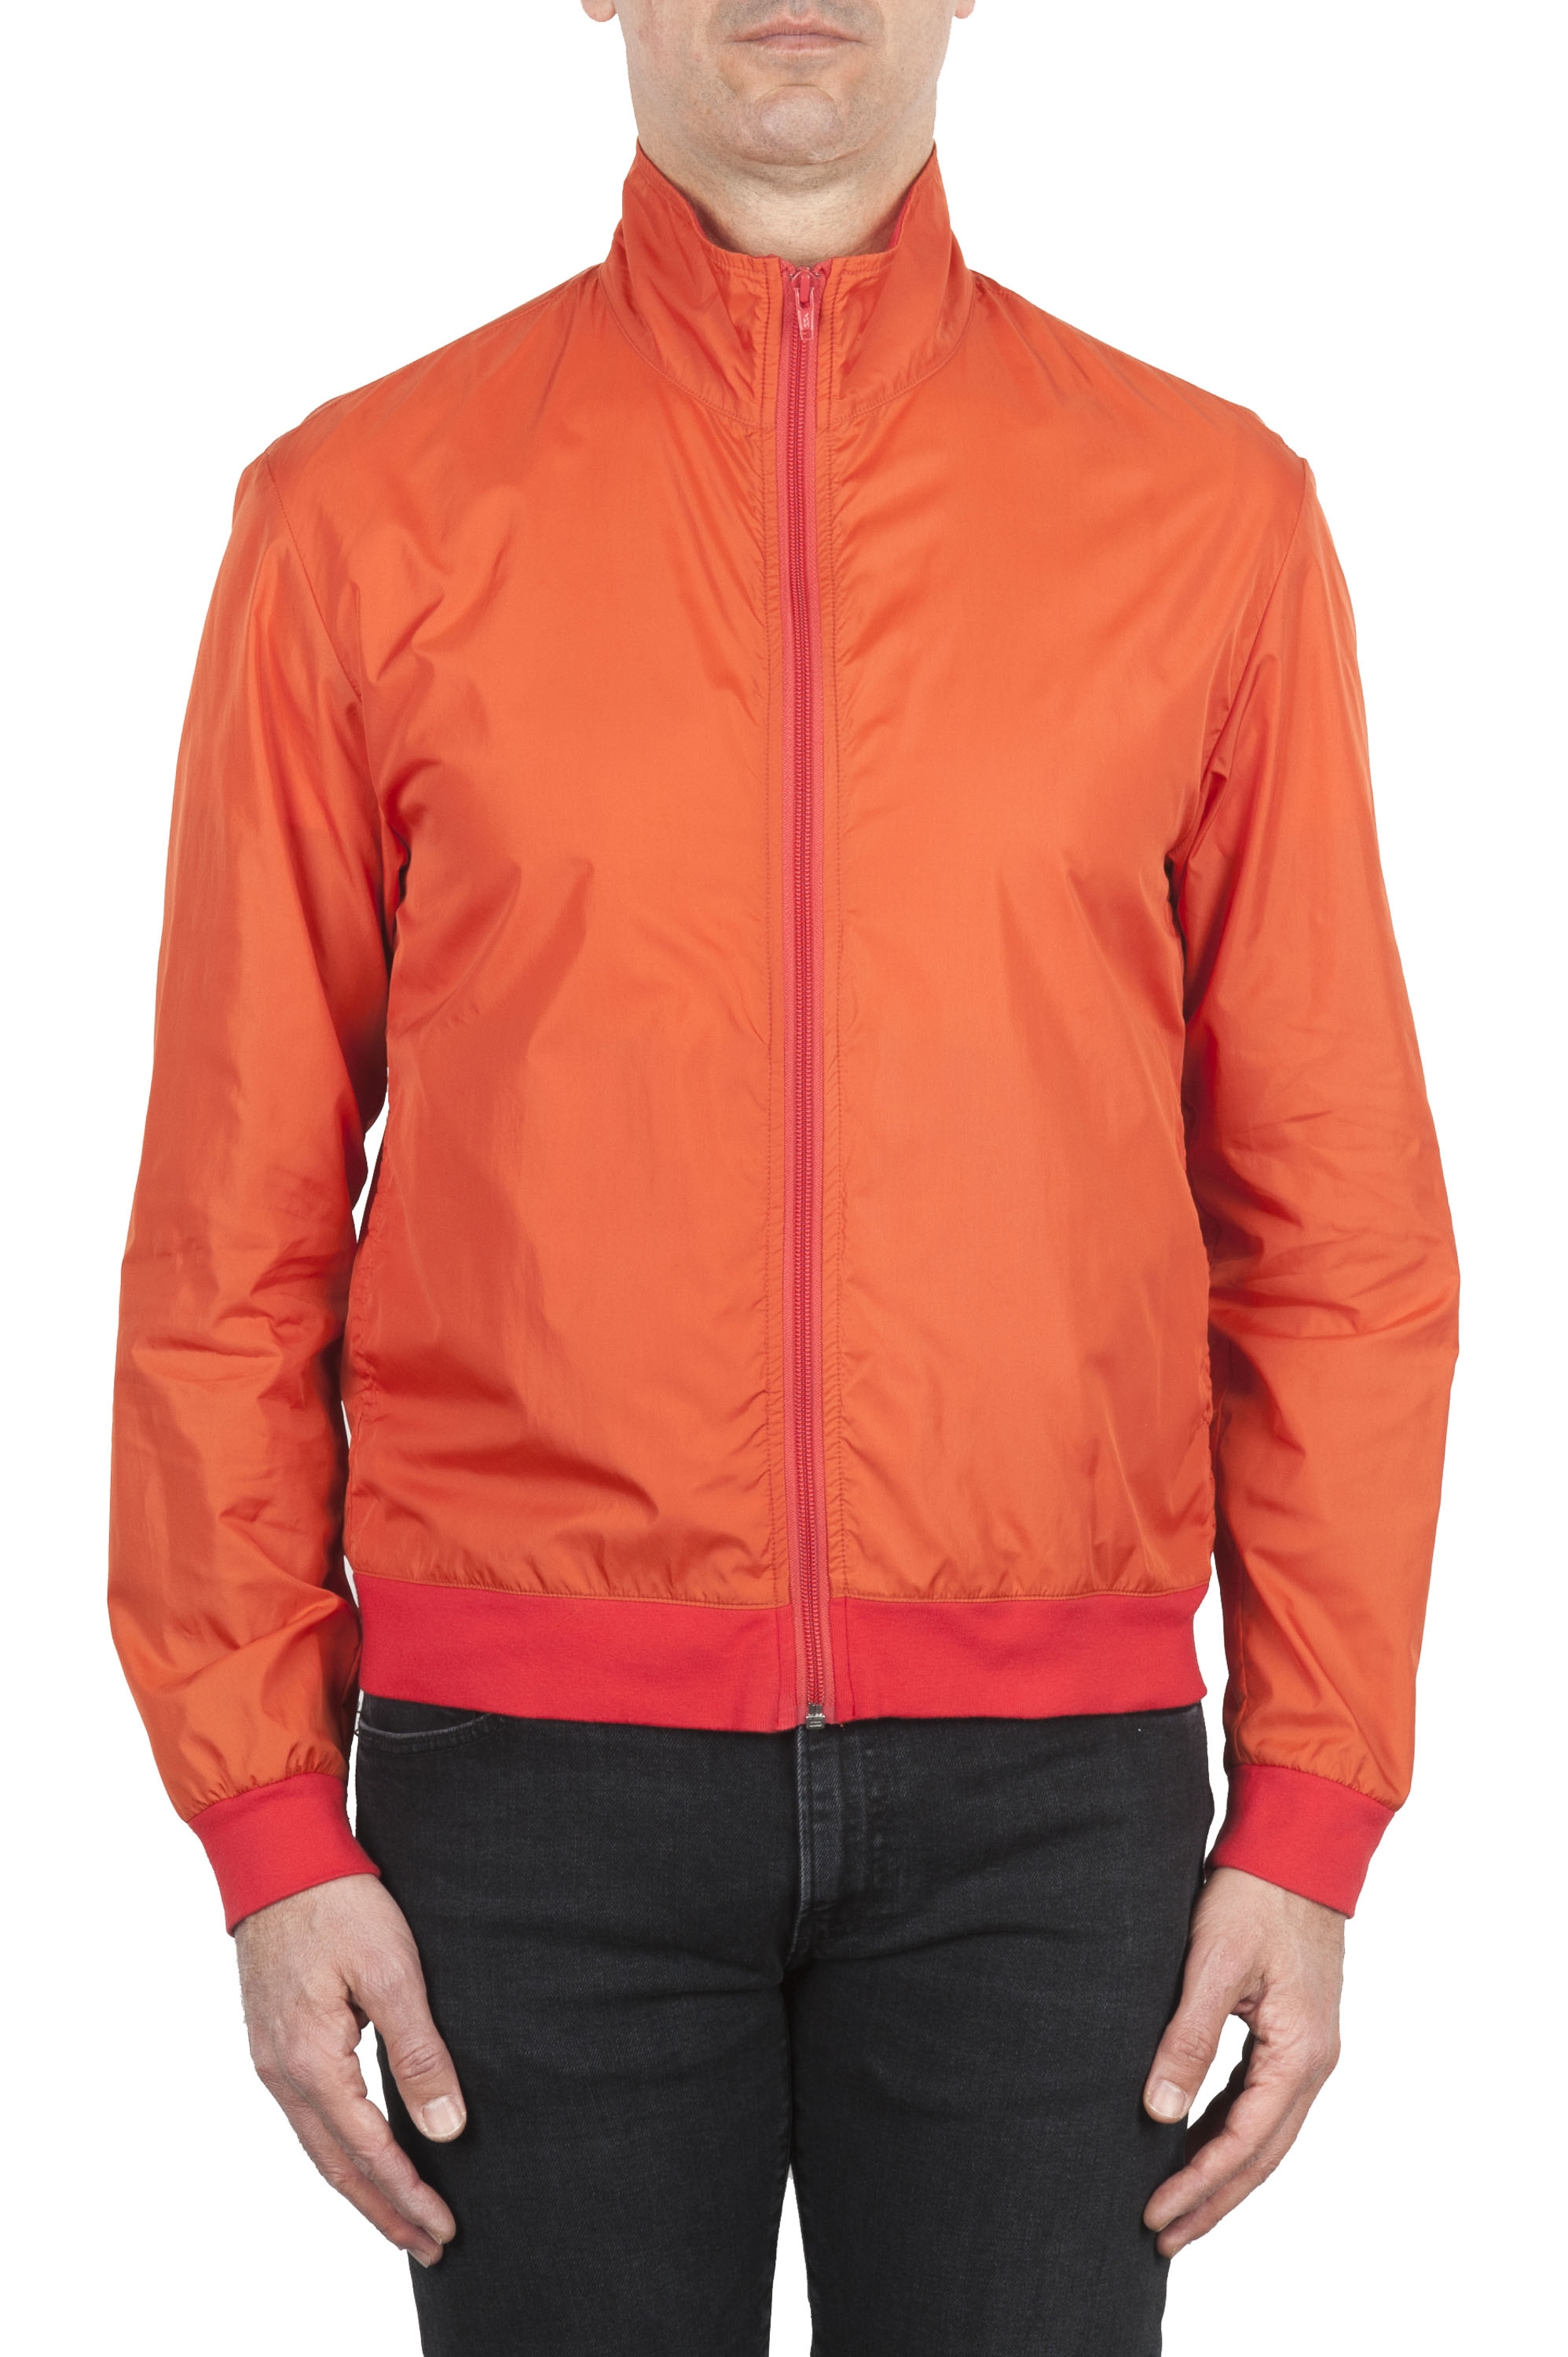 SBU 01687 Windbreaker bomber jacket in orange ultra-lightweight nylon 01